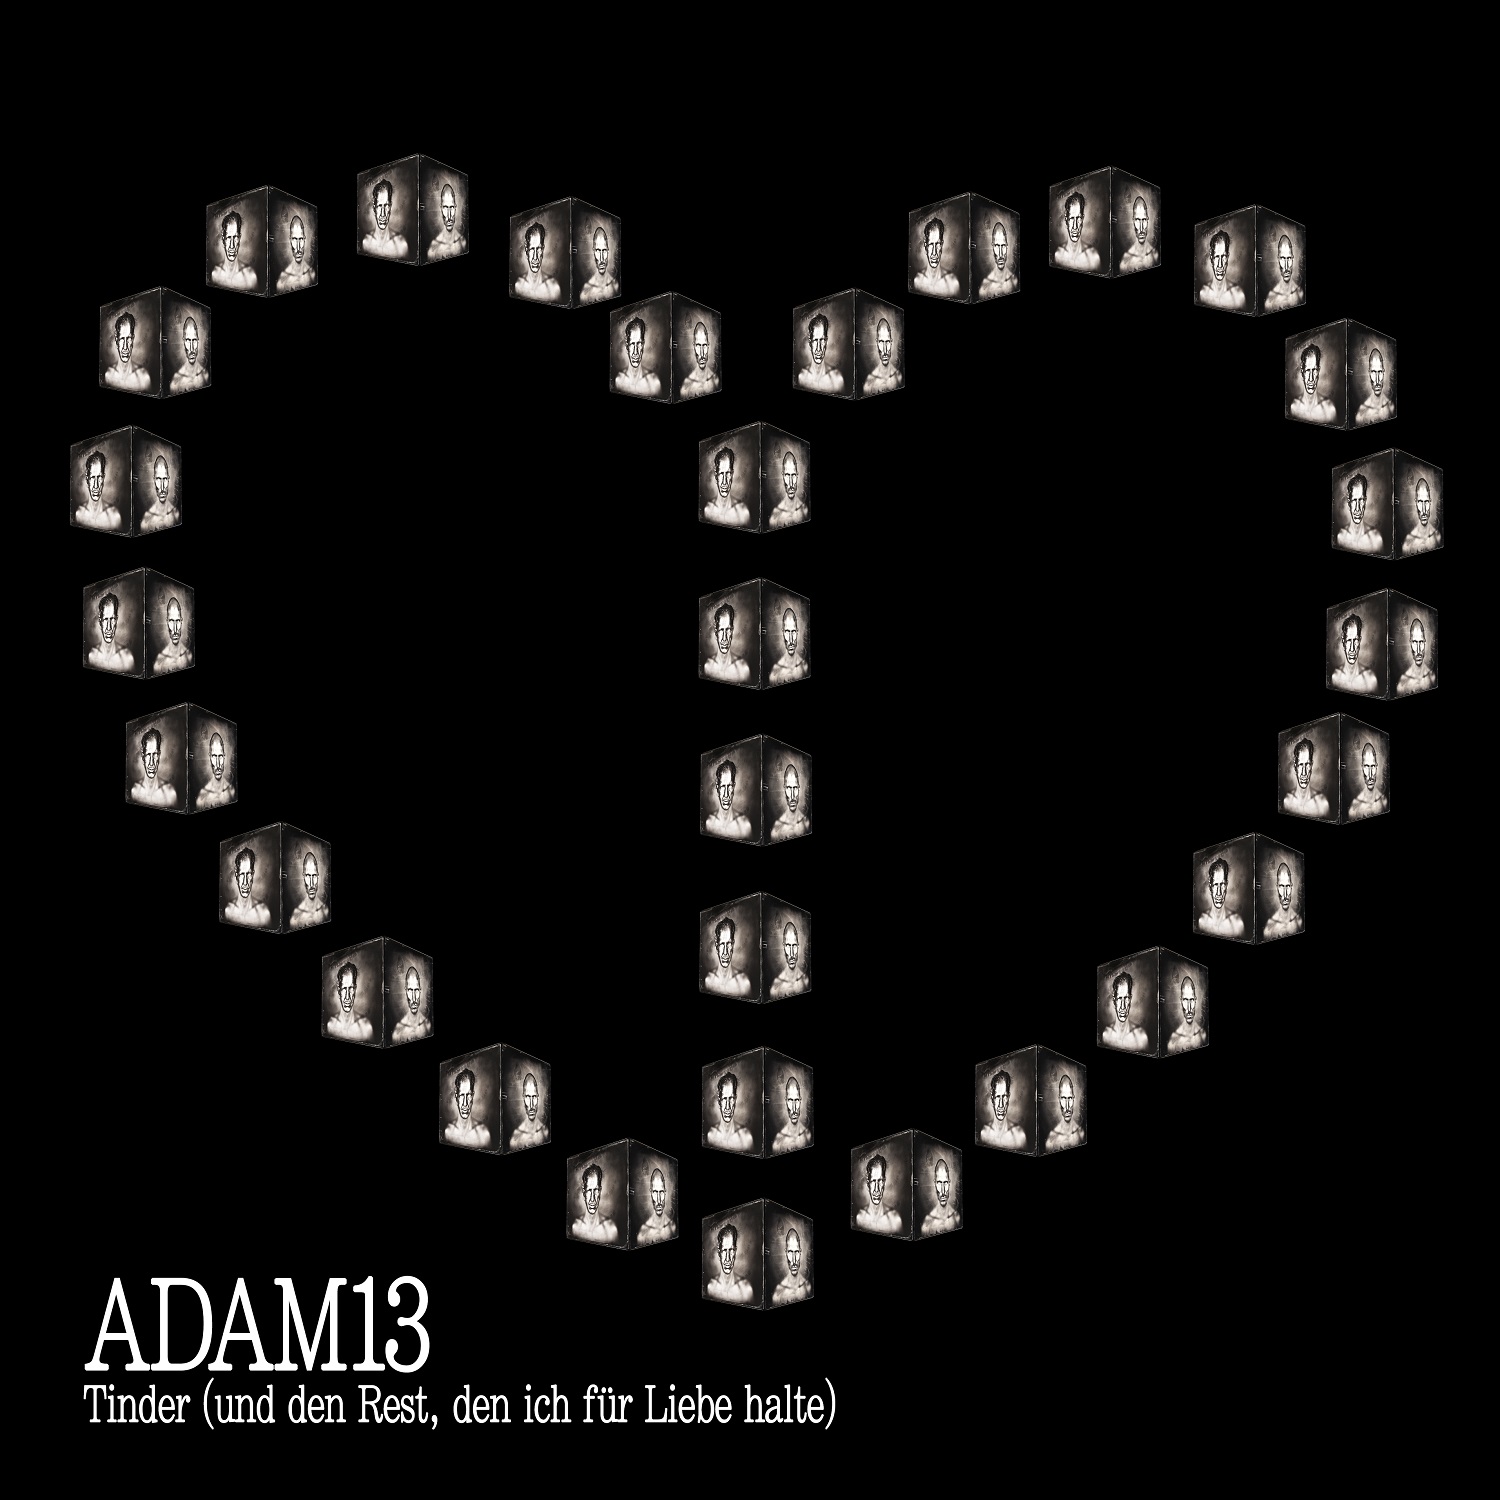 ADAM13 – TINDER (UND DEN REST, DEN ICH FÜR LIEBE HALTE) (Single)